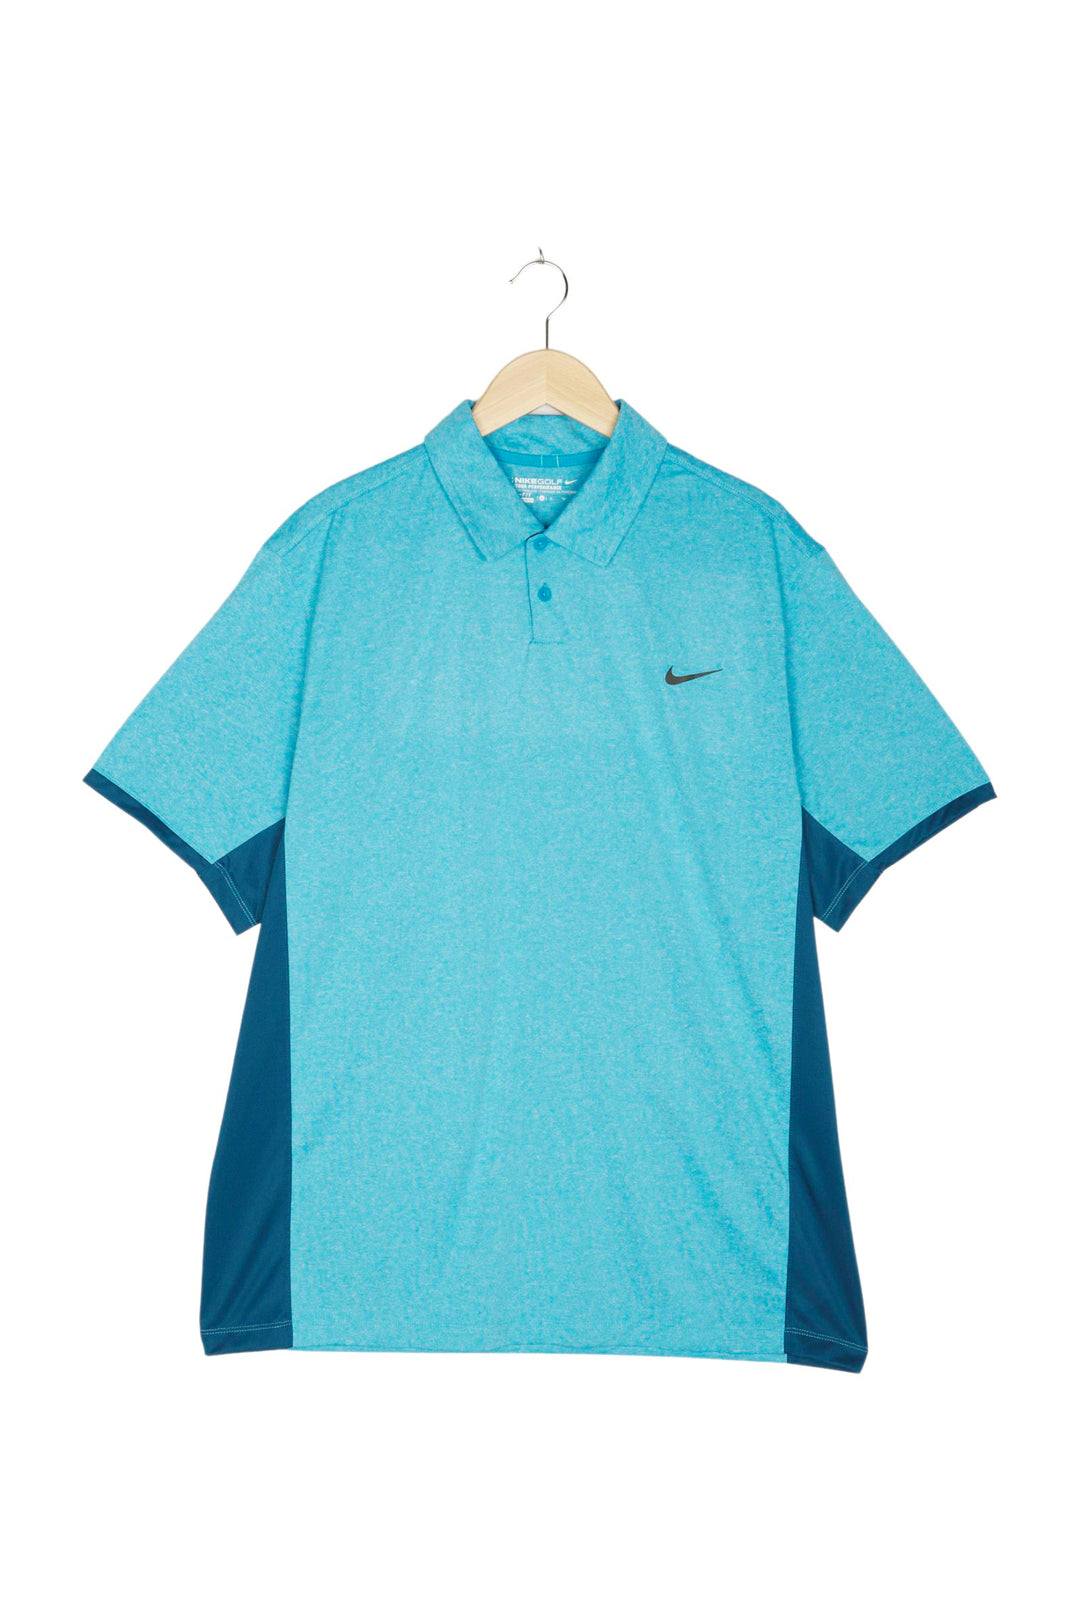 Nike Poloshirt für Herren